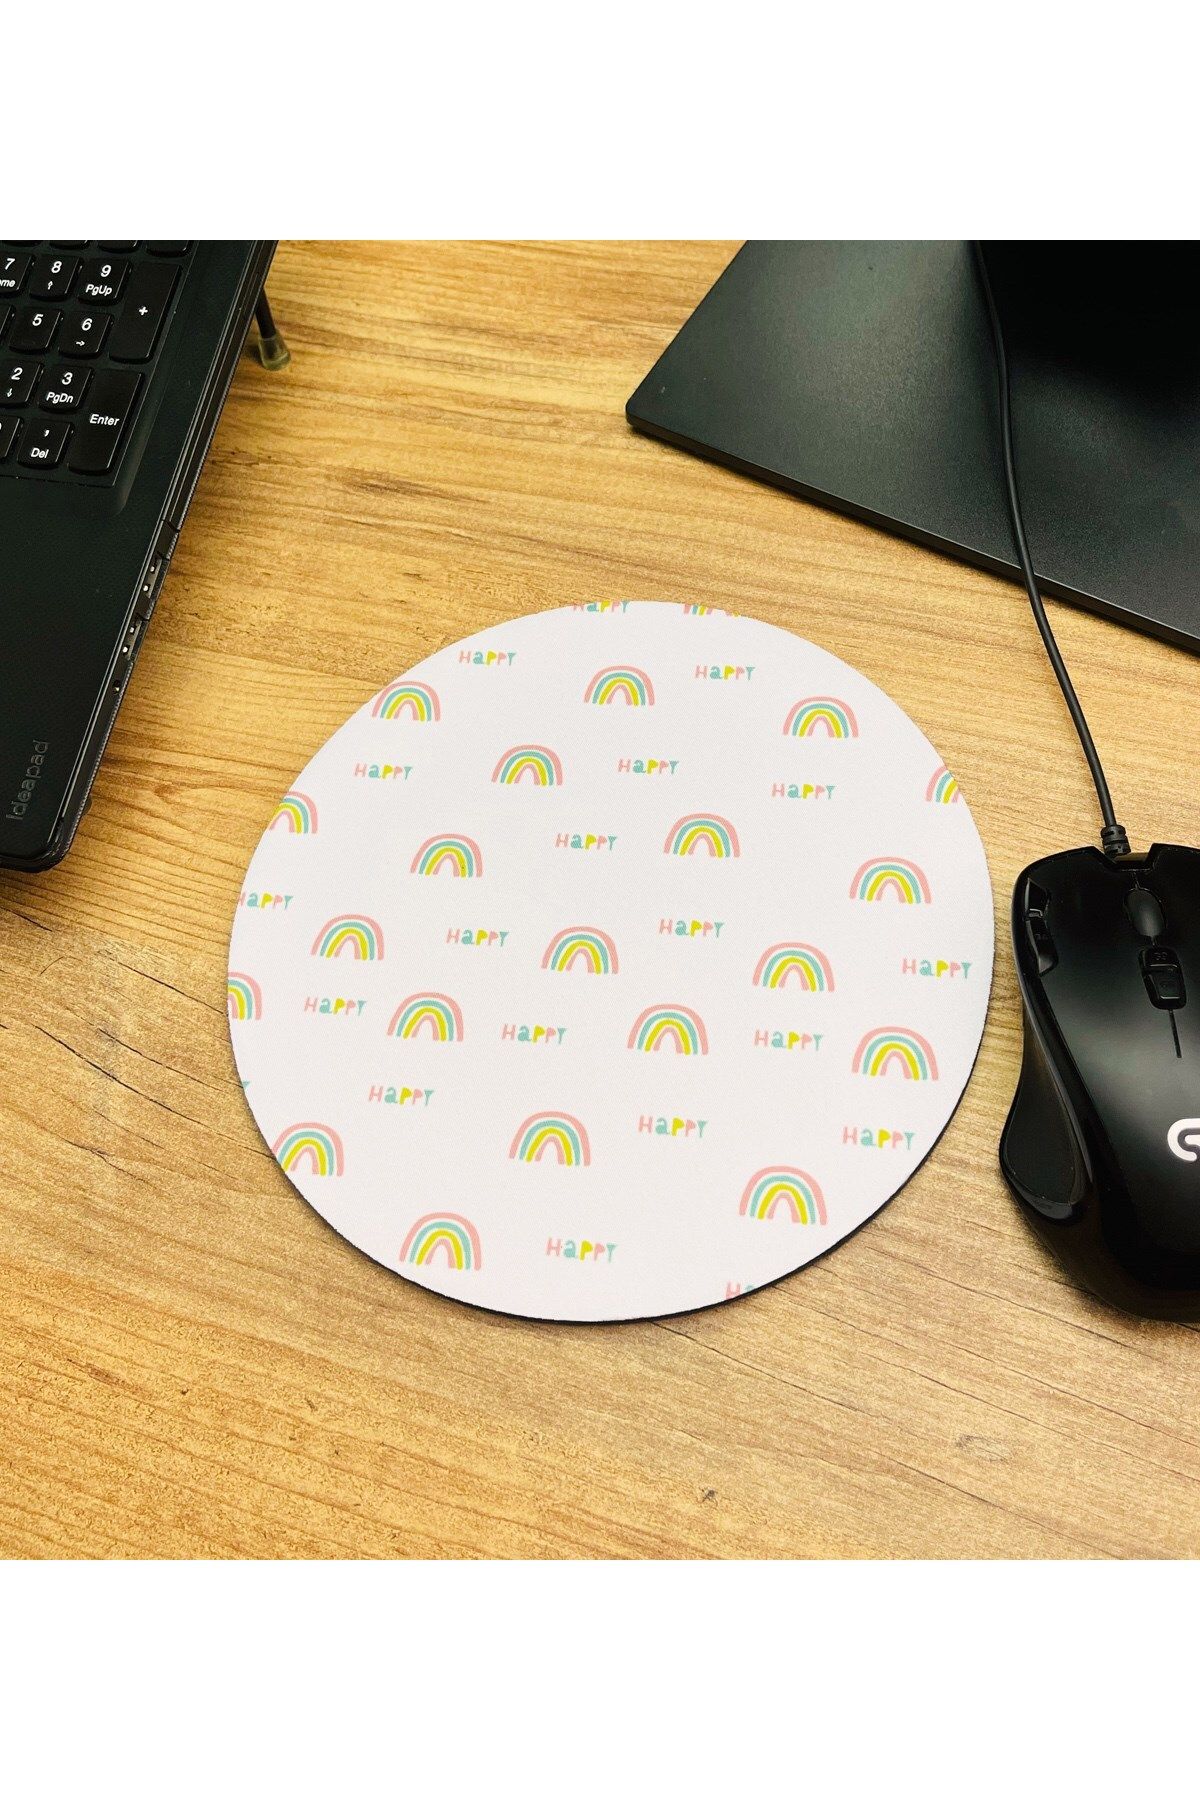 Gift Moda Happy Gökkuşağı Tasarımlı Oval Mouse Pad